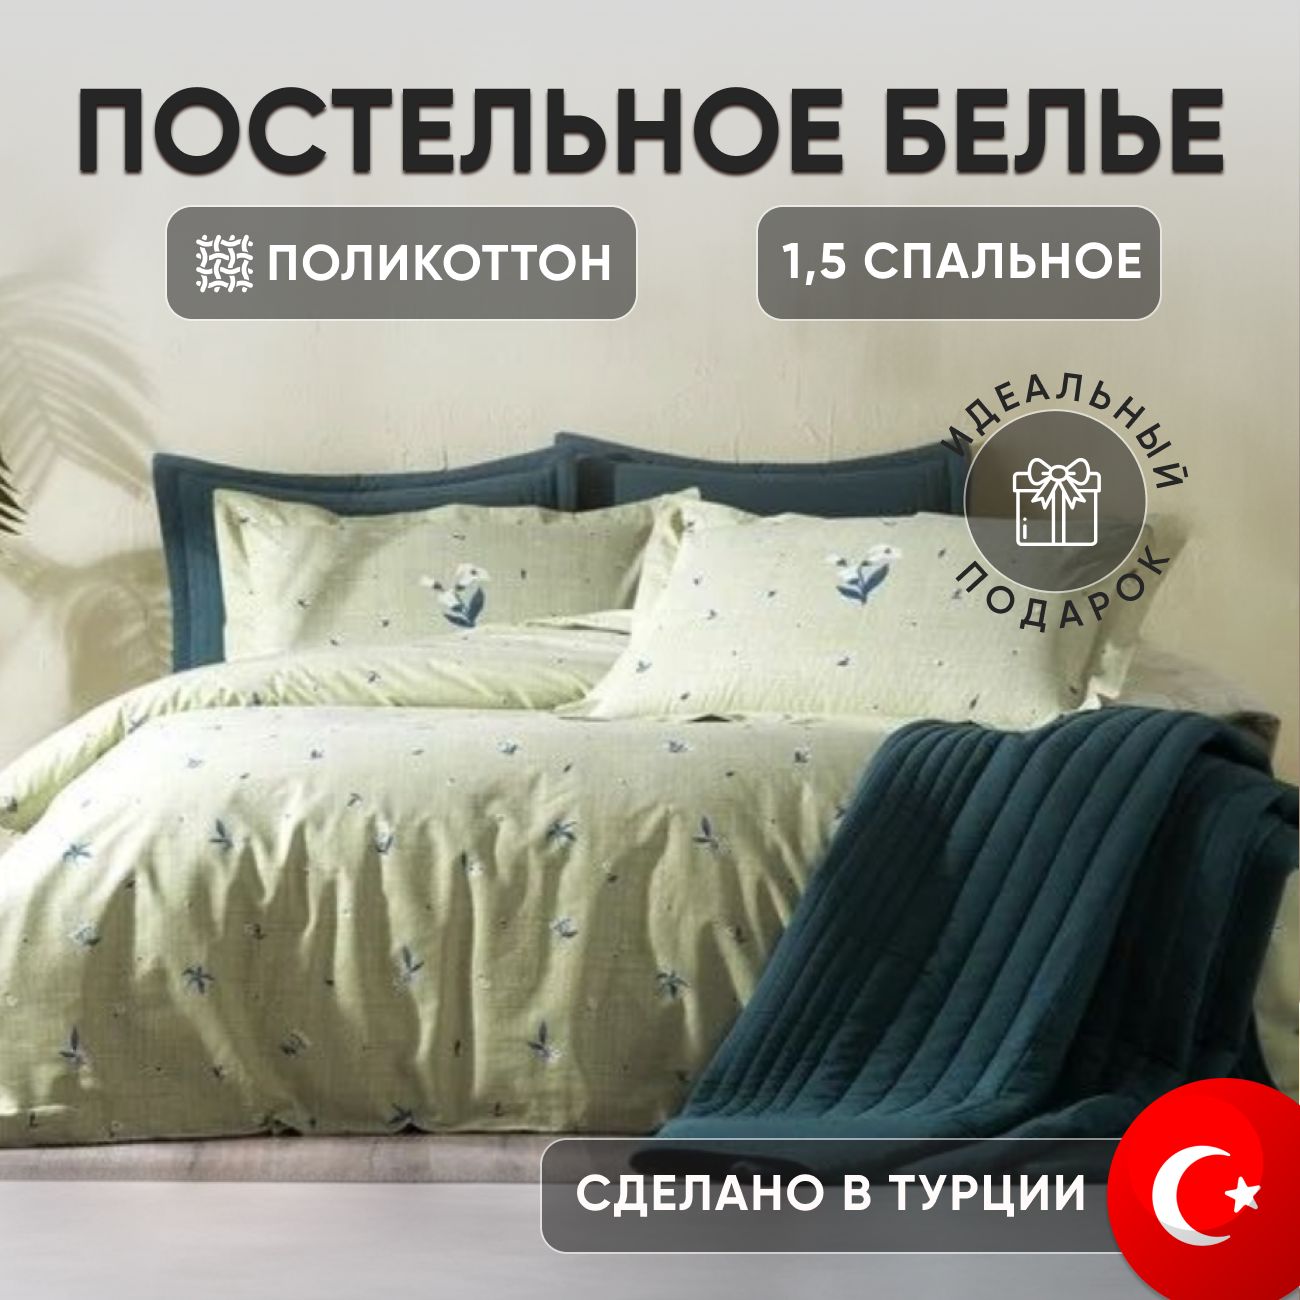 Постельноебелье1,5спальноеCHLOE,зеленый,Турция